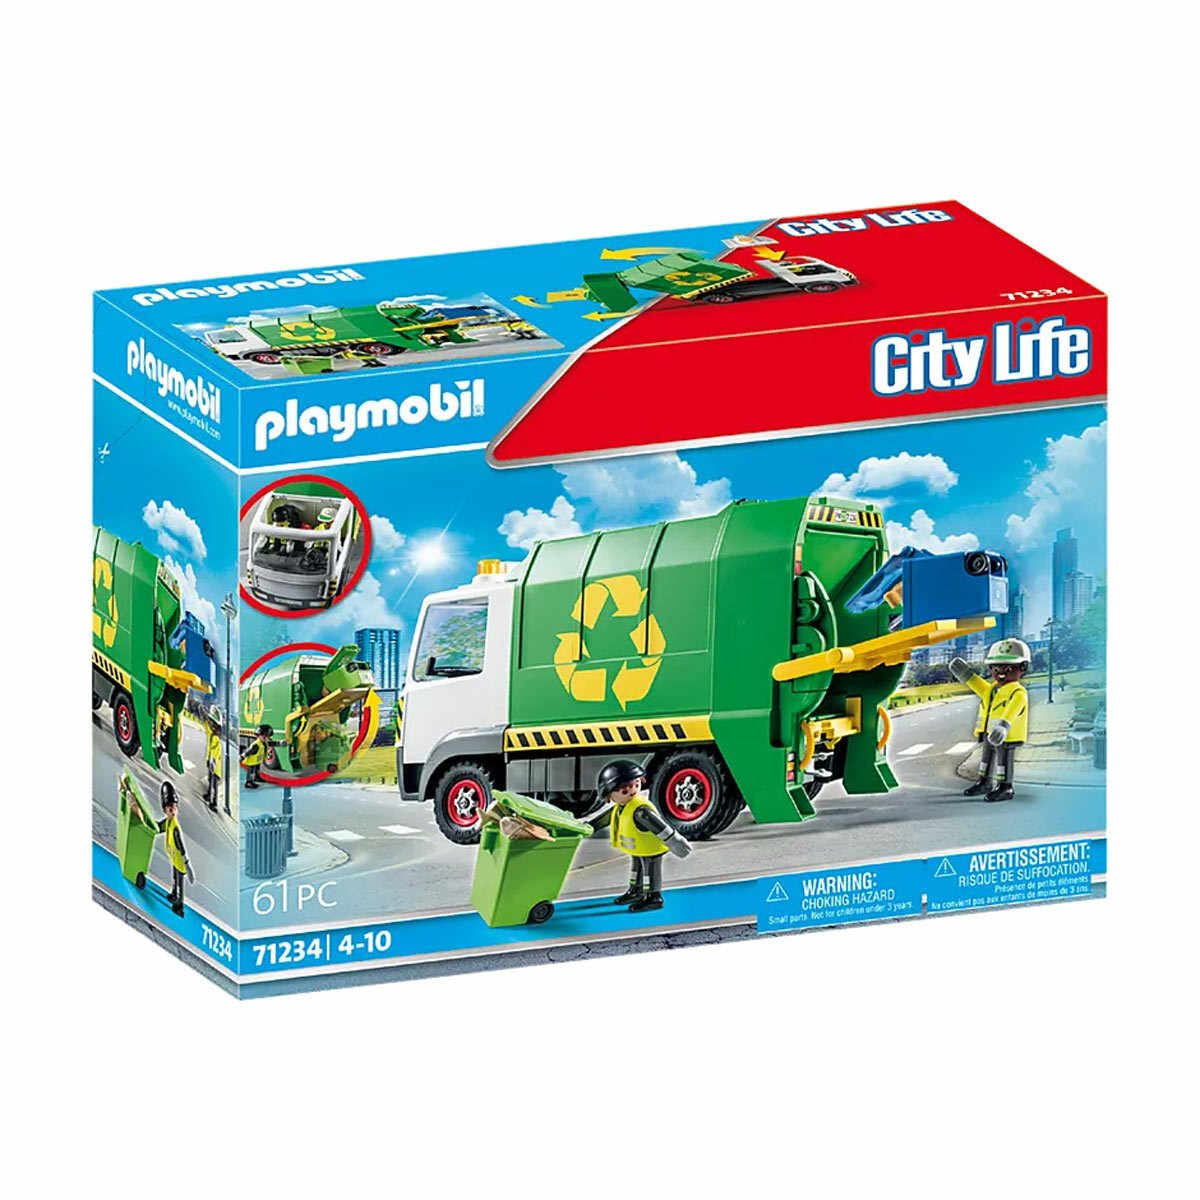 Playmobil - Camion De Reciclare Cu Accesorii